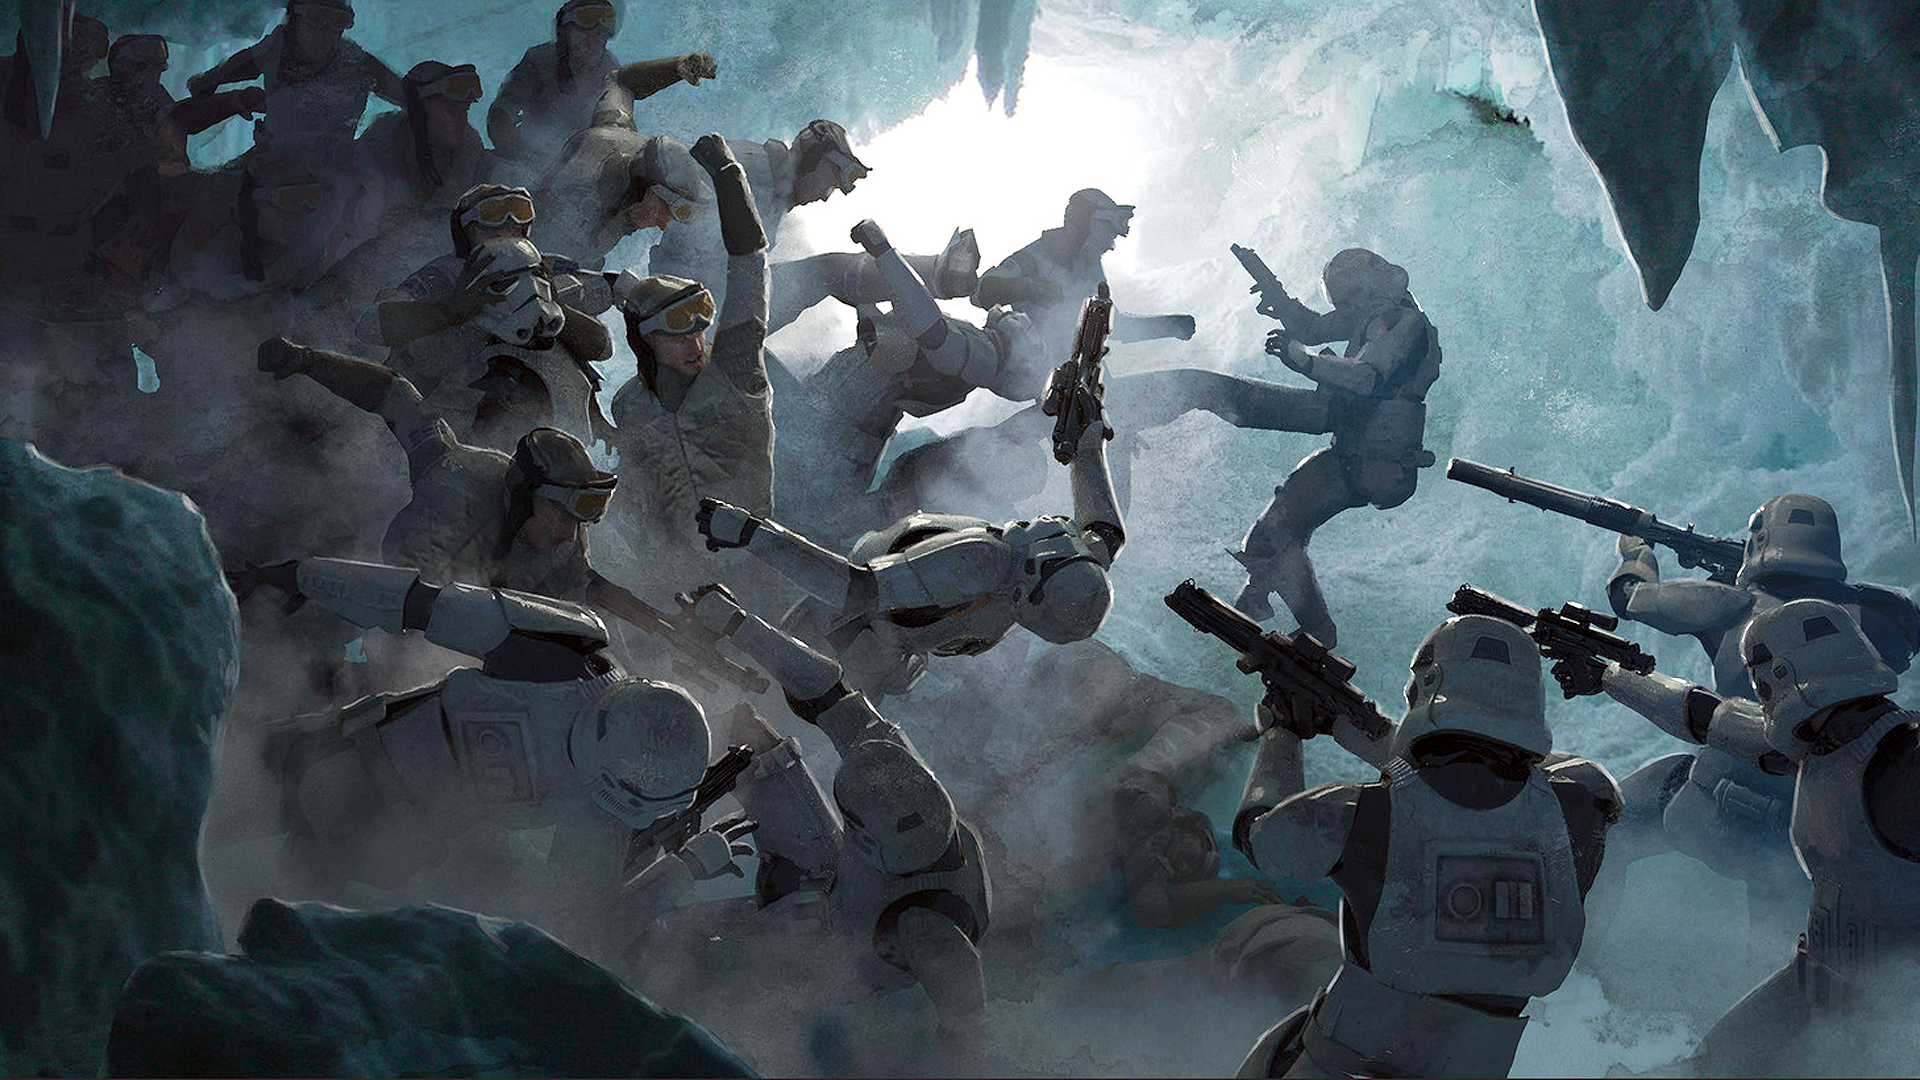 Guillem H Pongiluppi Digital Art Artwork Star Wars Stormtrooper Rebels Battle Ice Cave Kick Blaster  1920x1080